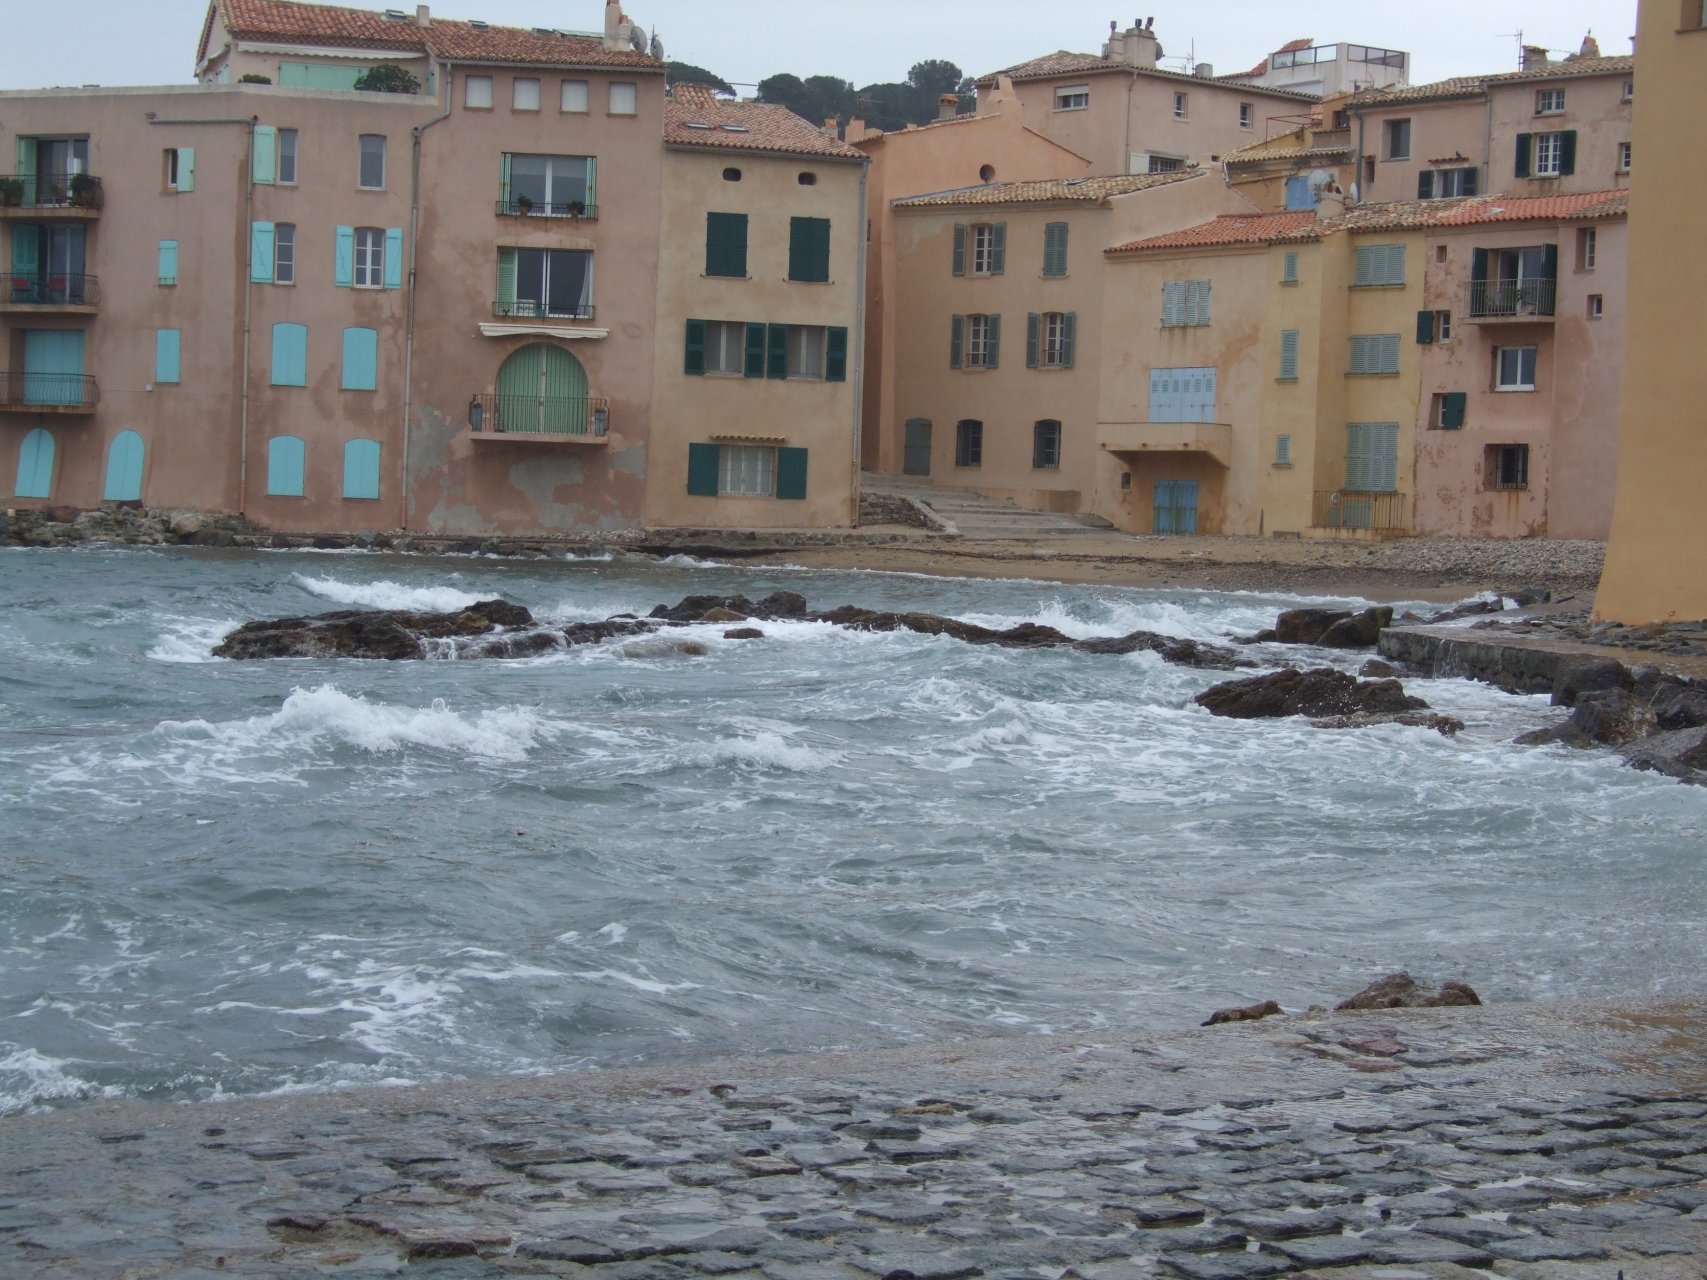 Wzburzone wody zatoki Saint-Tropez